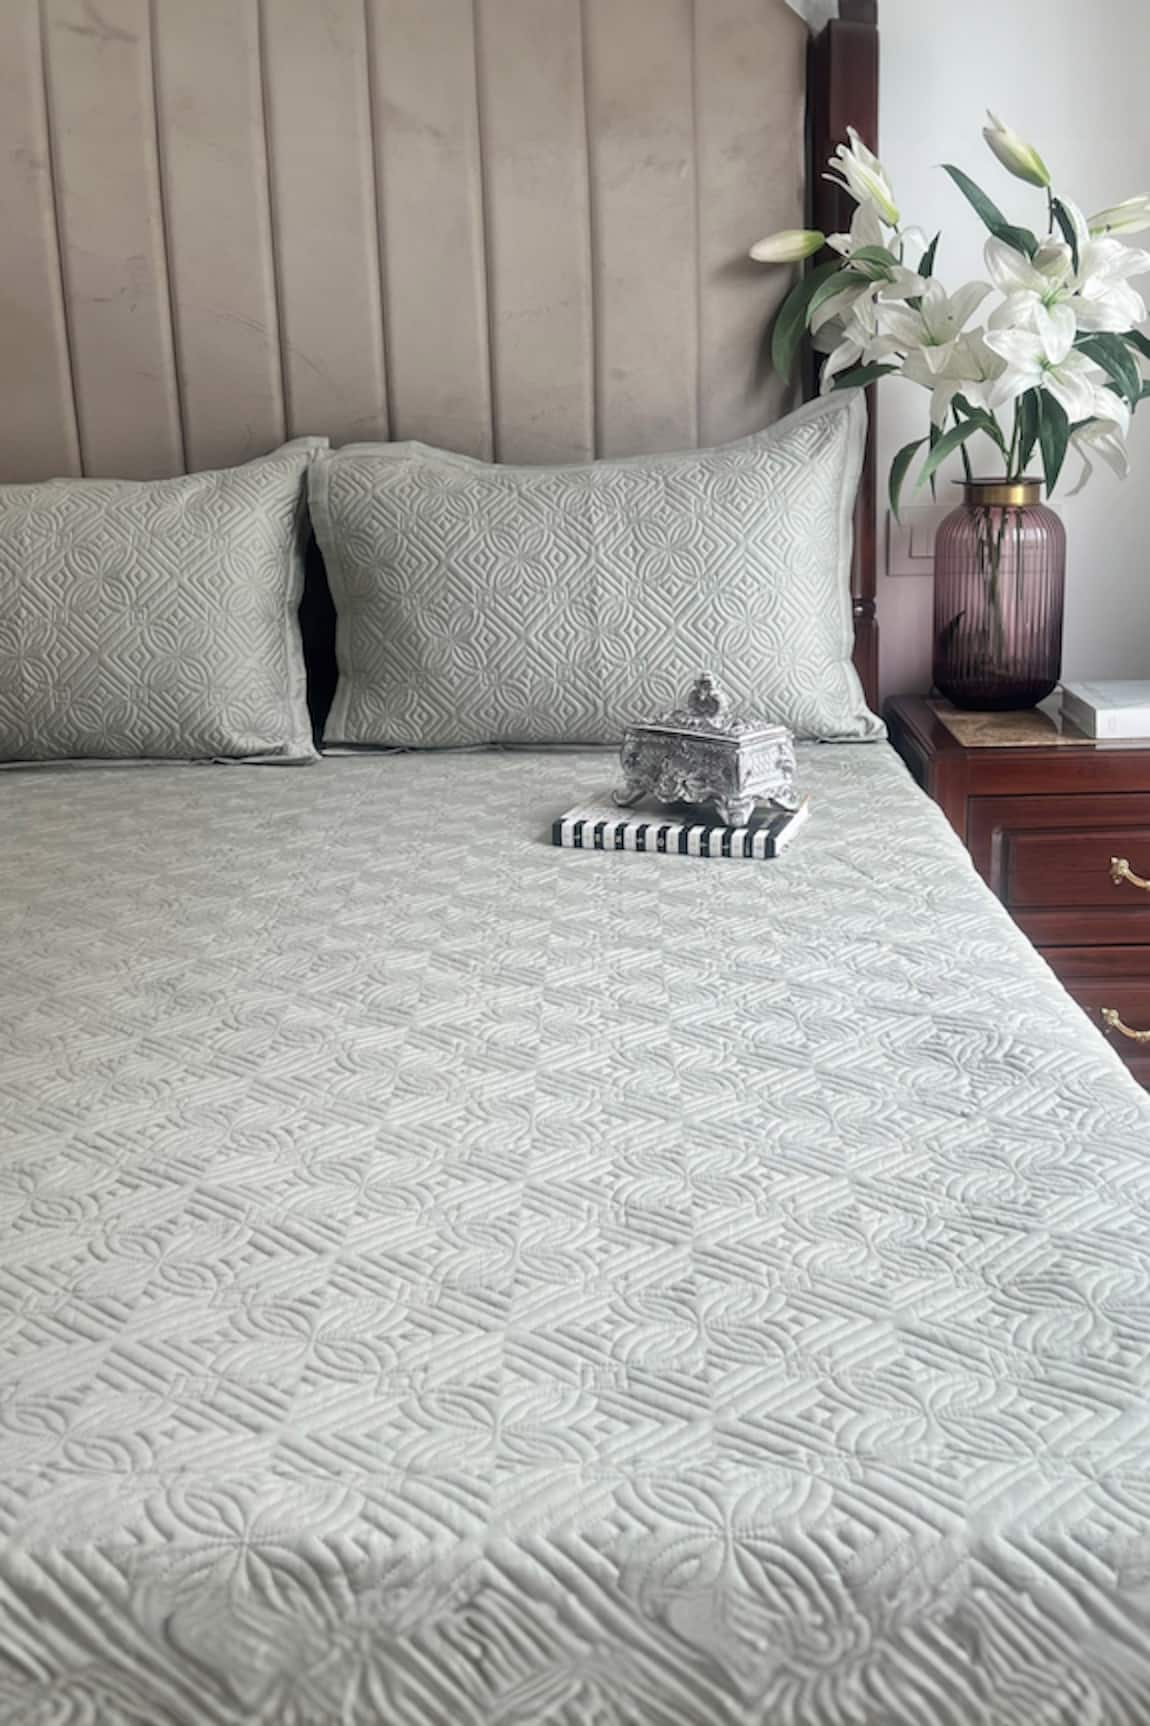 Sadyaska Oasis Quilted Reversible Bedspread Set